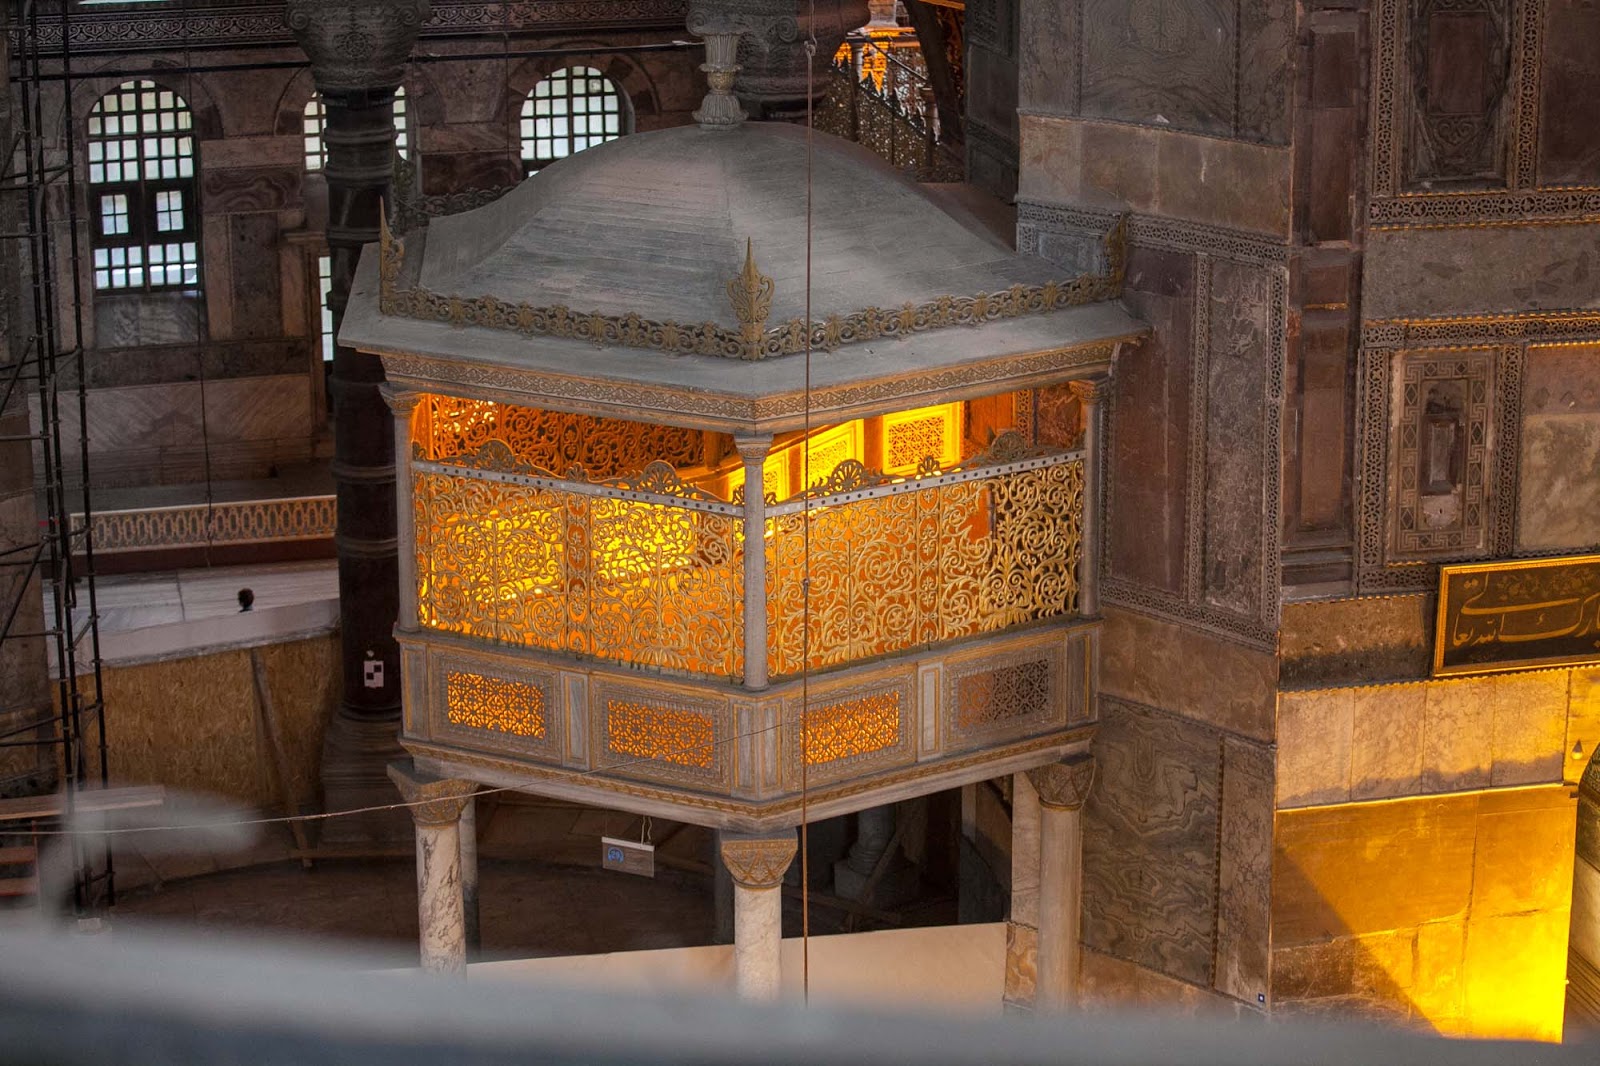 Chamber in Hagia Sophia